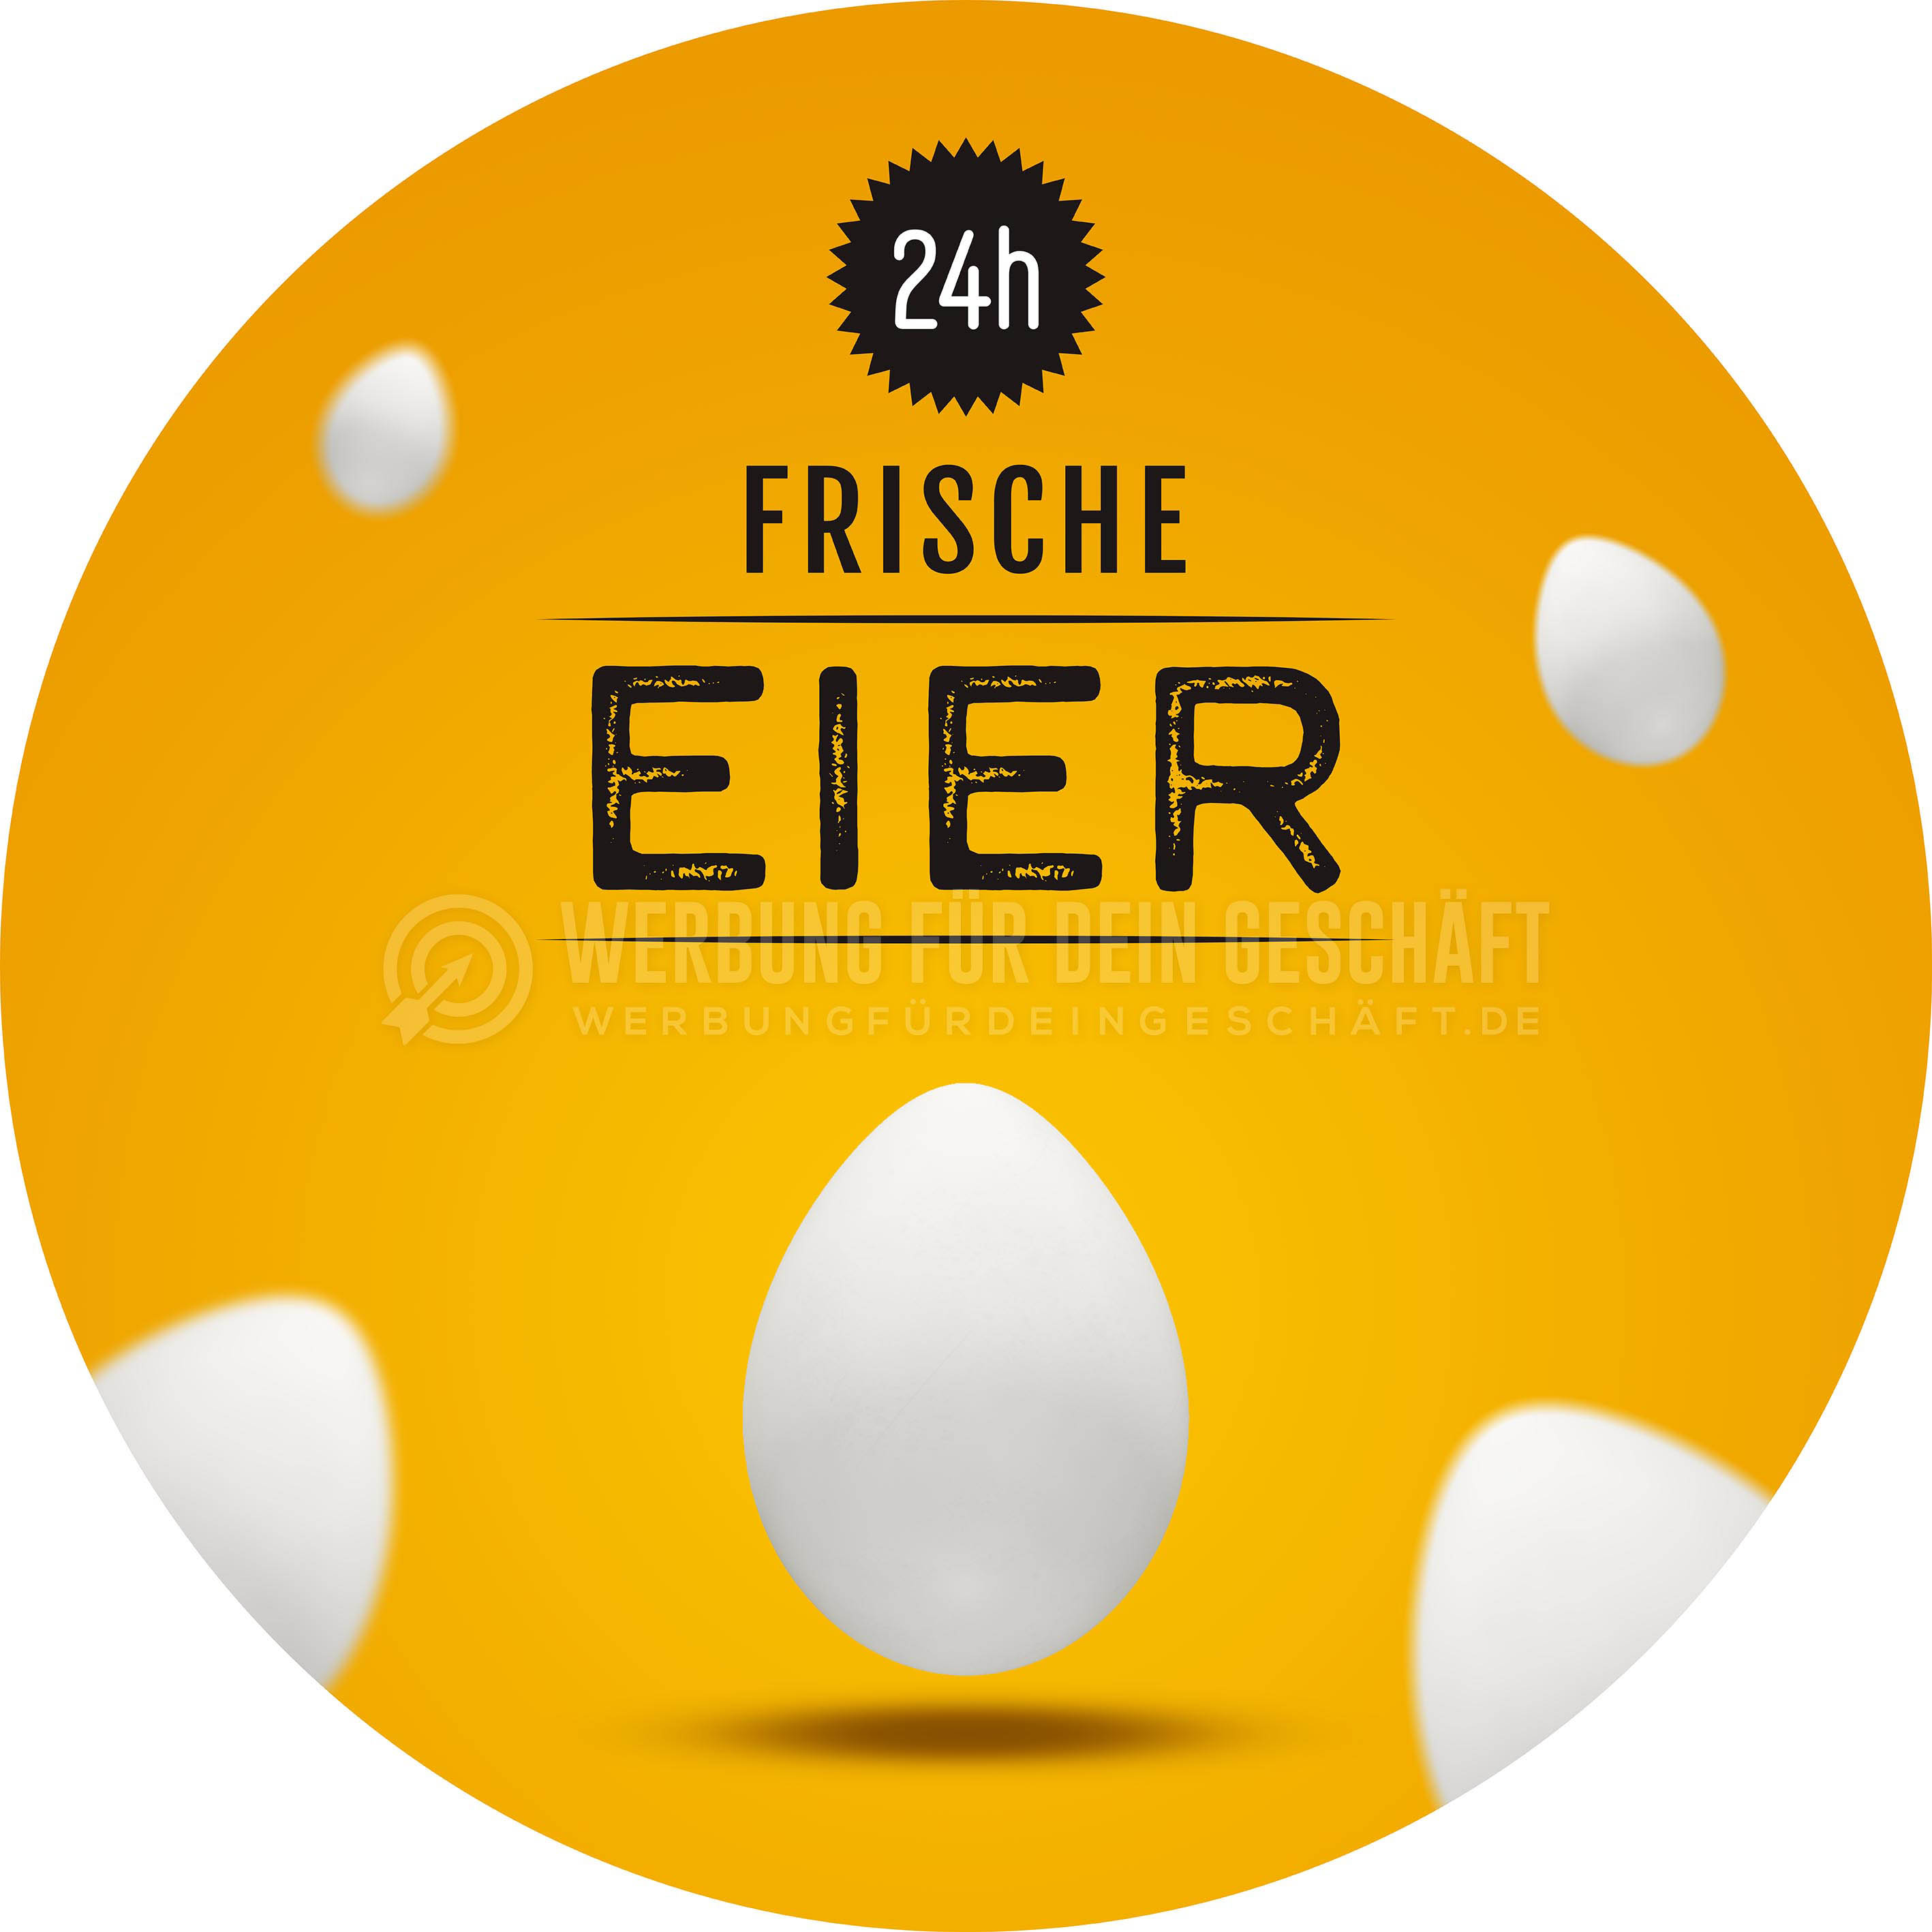 Rund | 24h frische Eier Werbeplakat | Poster| Rundformat